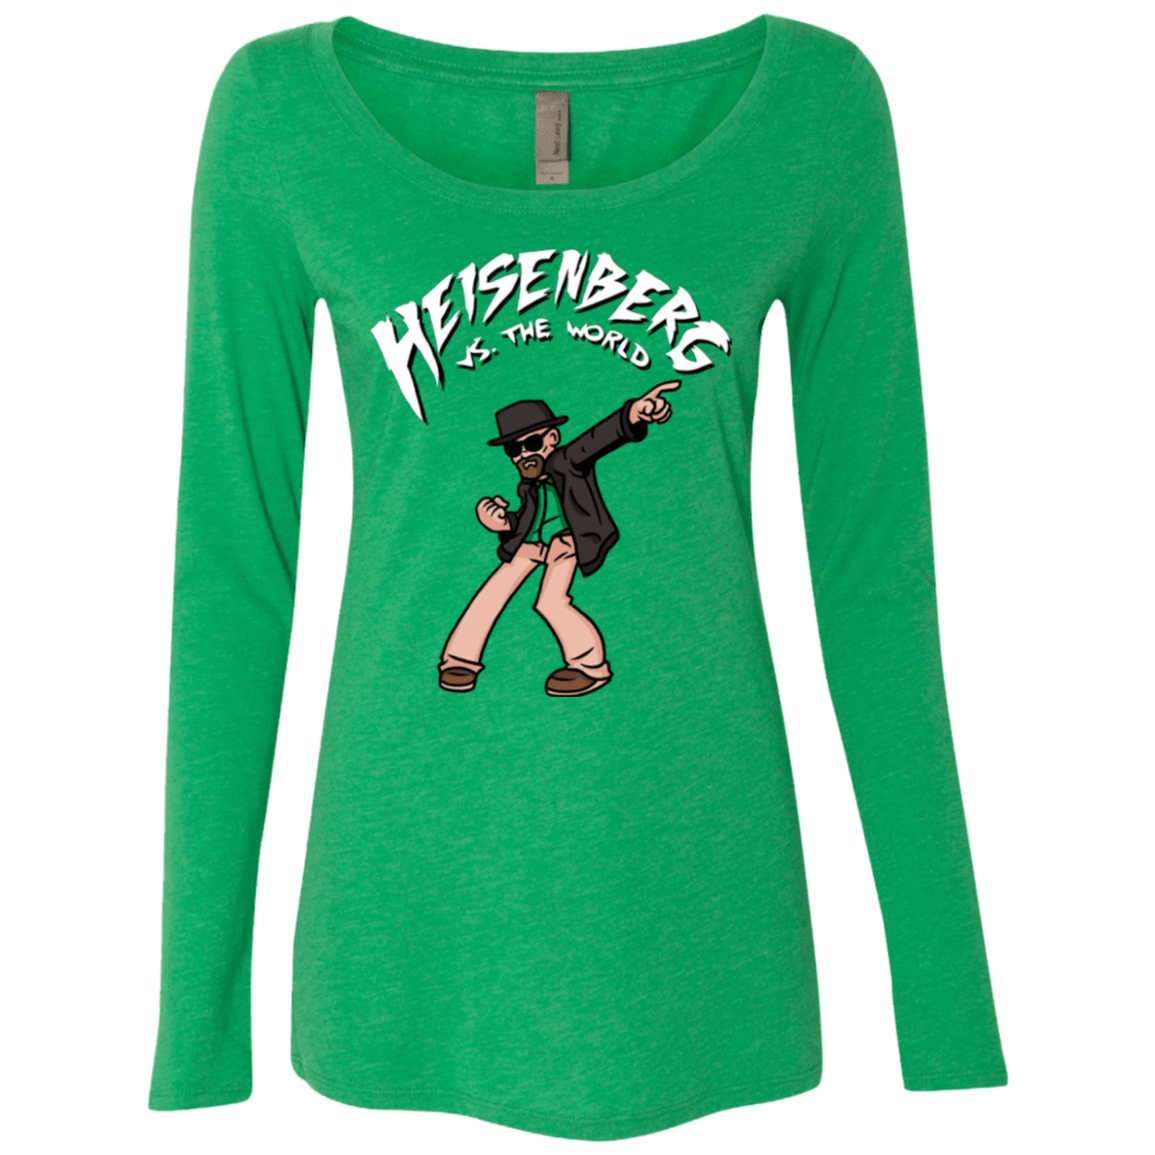 T-Shirts Envy / Small Heisenberg vs the World Women's Triblend Long Sleeve Shirt